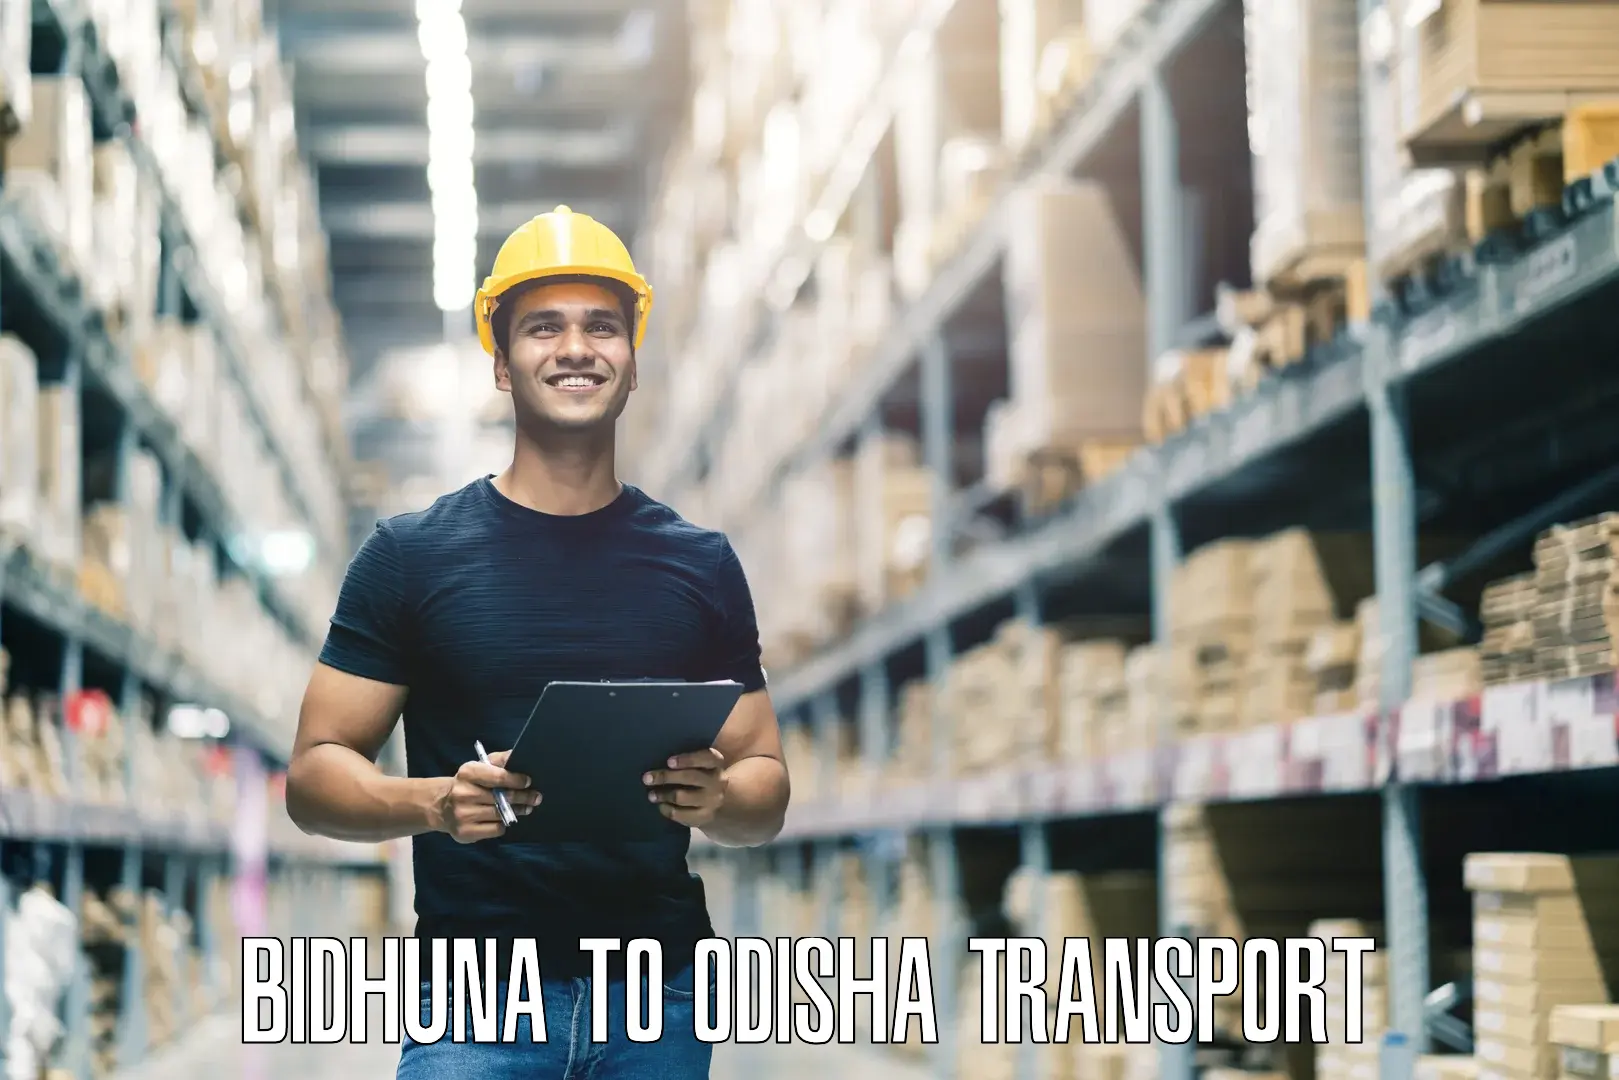 Transport in sharing Bidhuna to Mangalpur